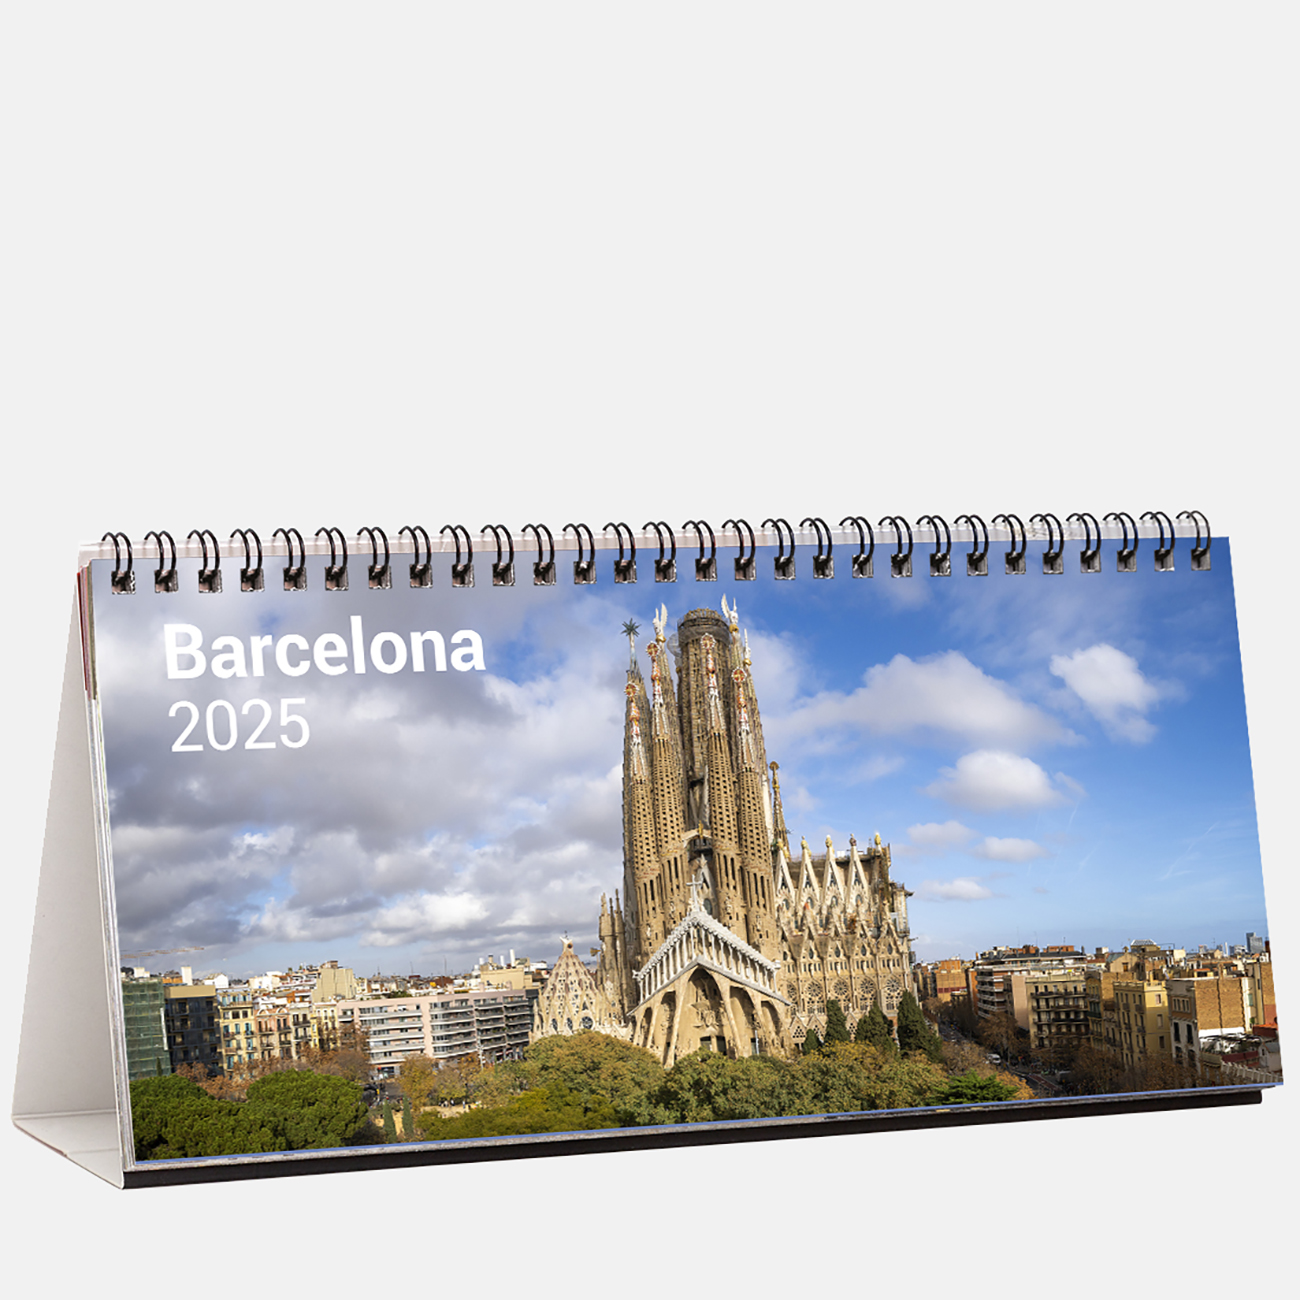 Calendar 2025 Barcelona s25b calendario sobremesa panoramico 2025 barcelona